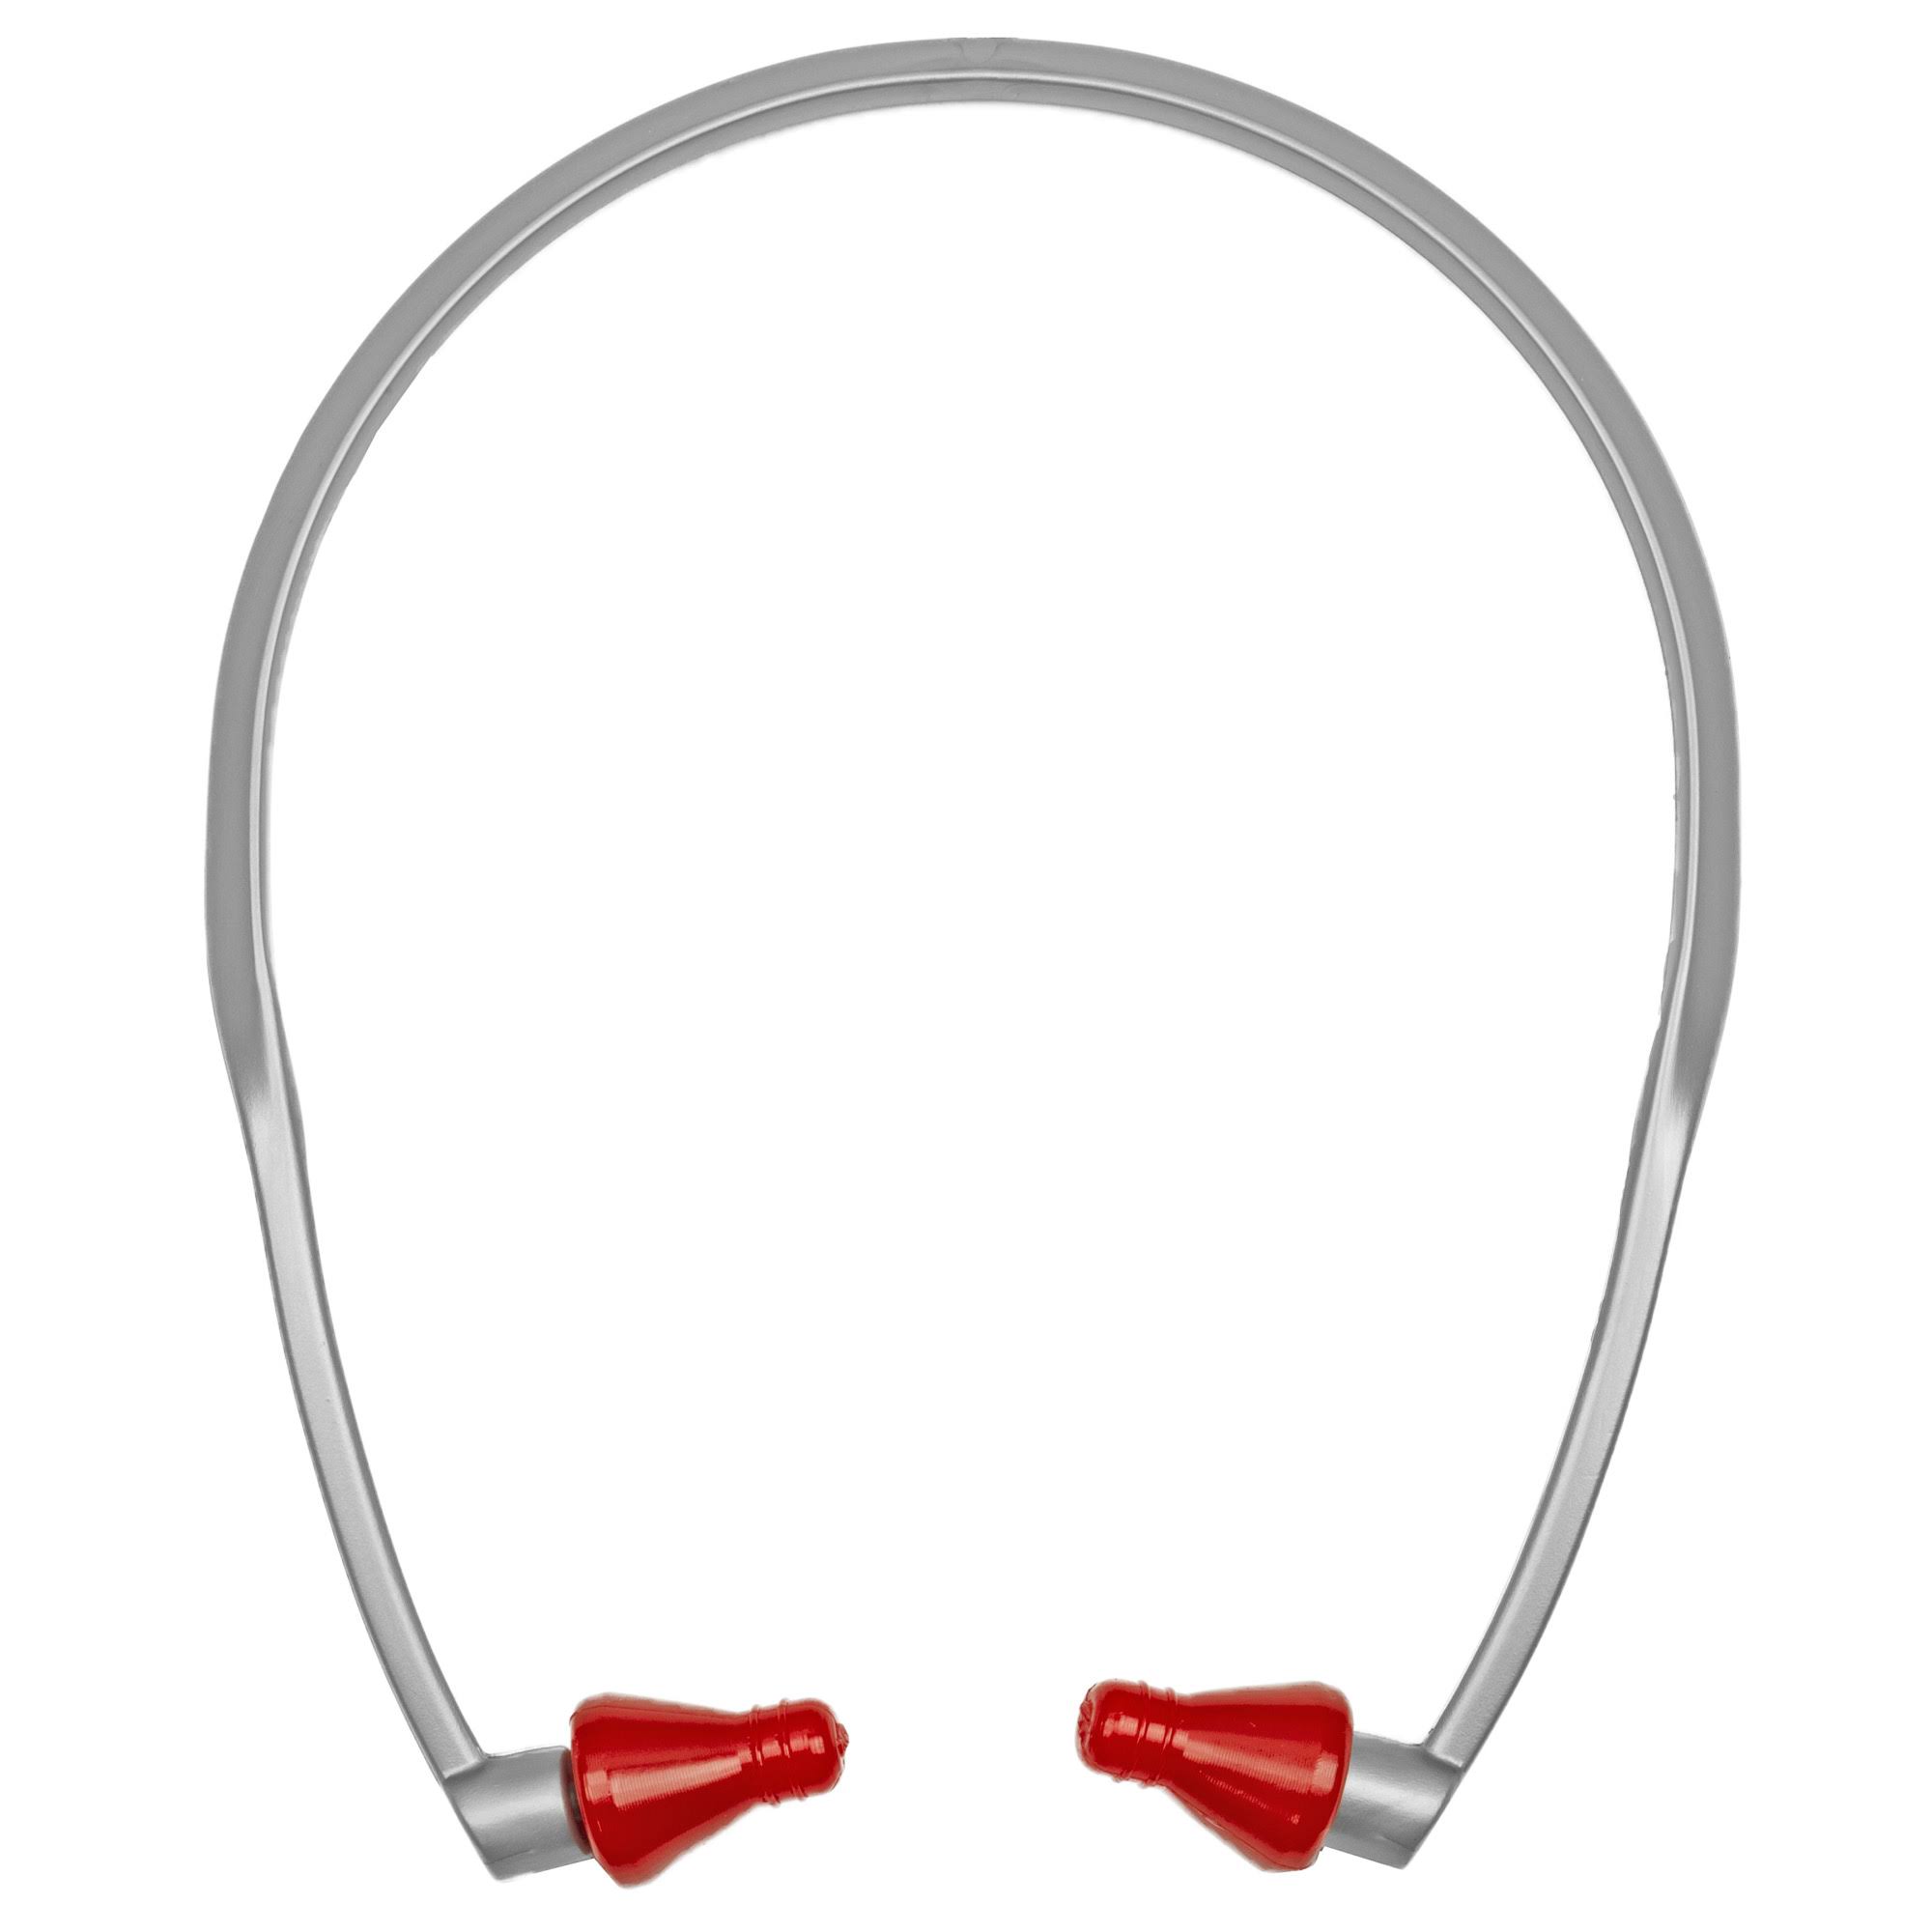 Radians RB1150 Super Soft Rad Band Ear Plug - Red Tips